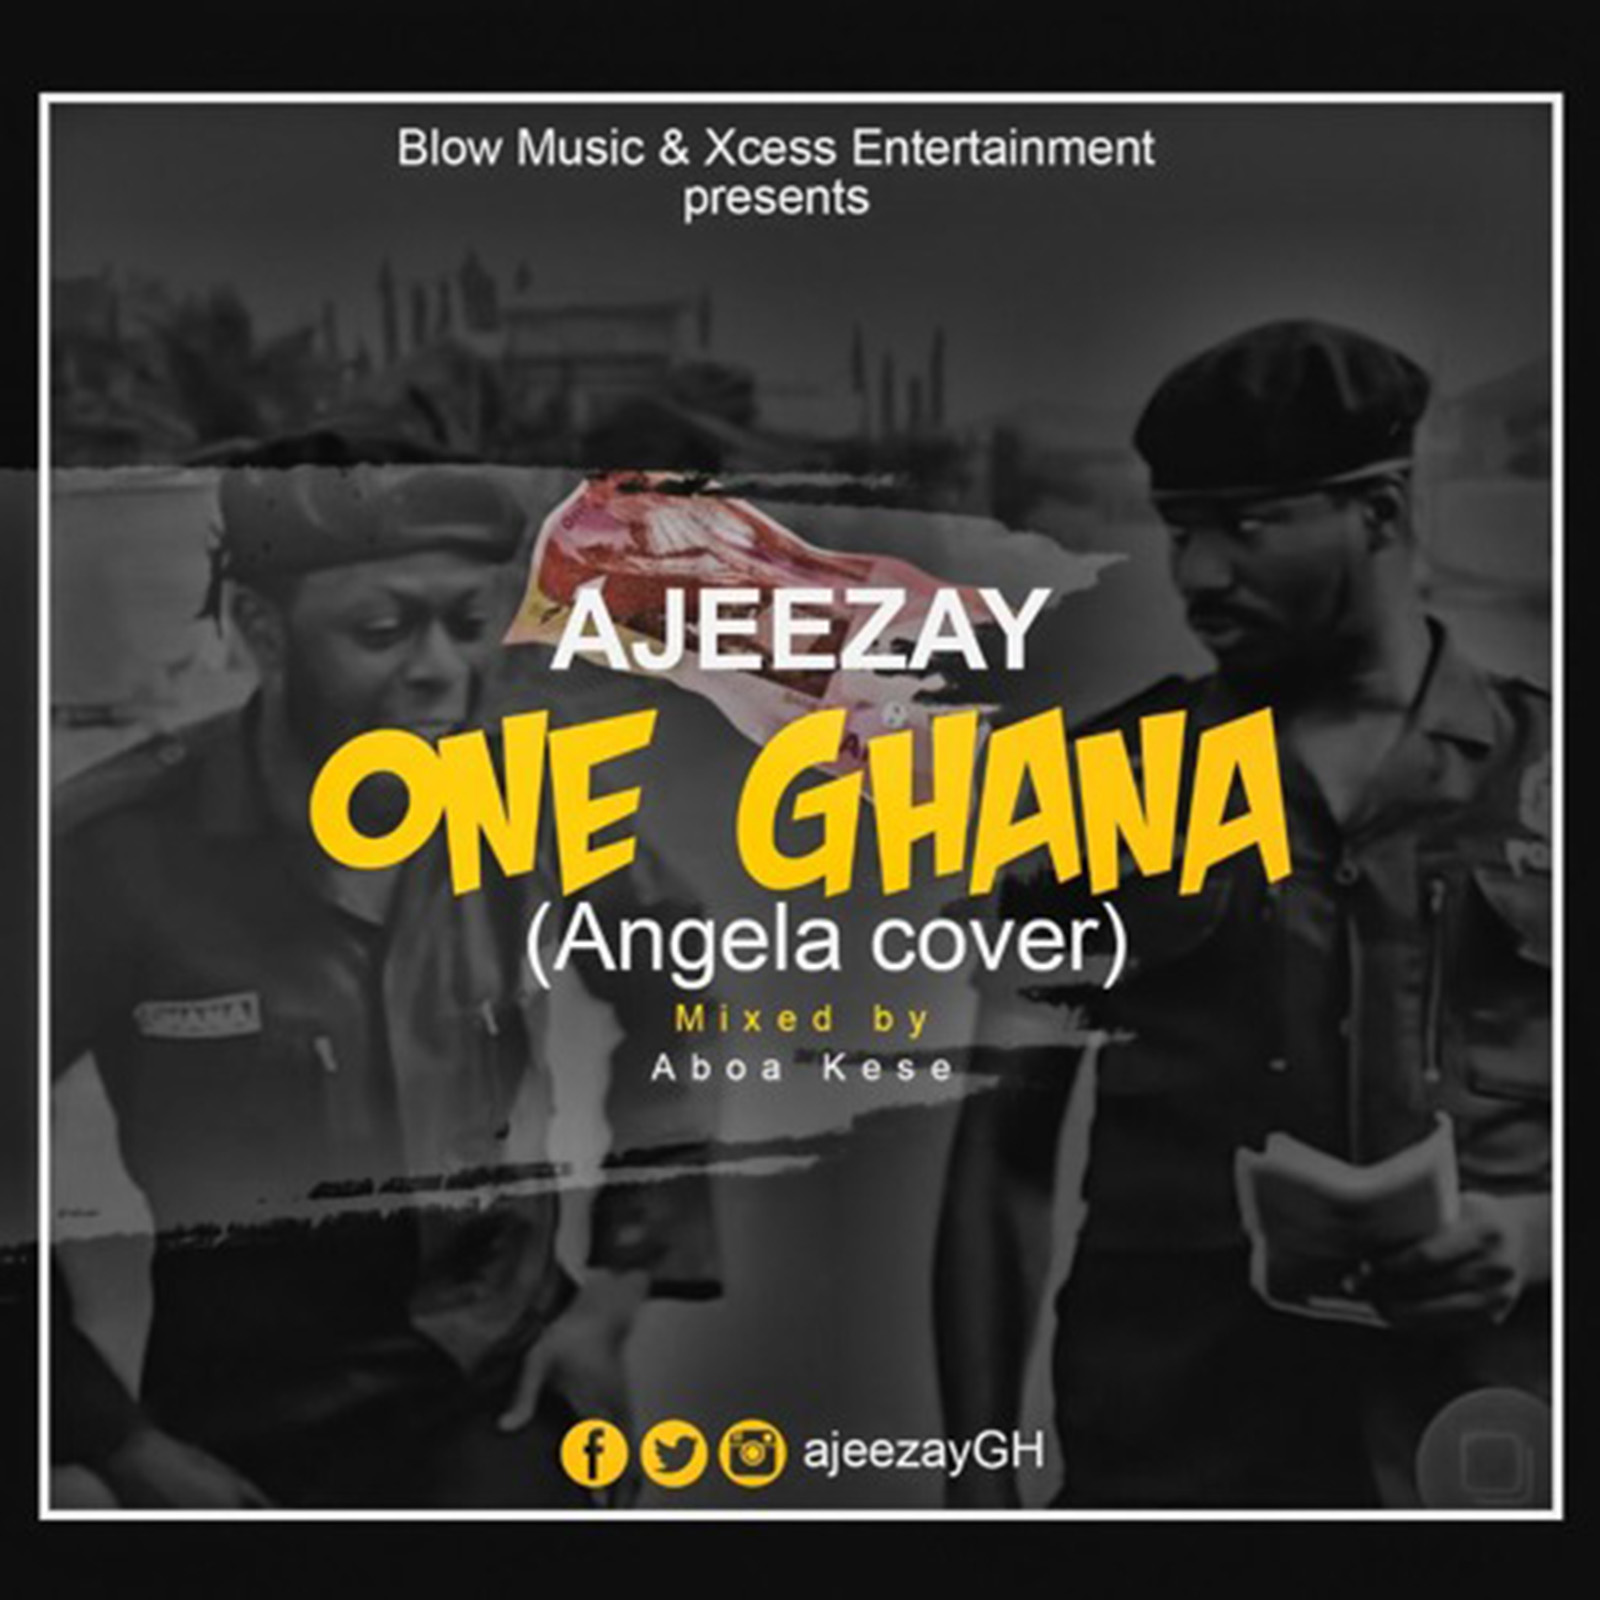 One Ghana (Angela Cover) by Ajeezay